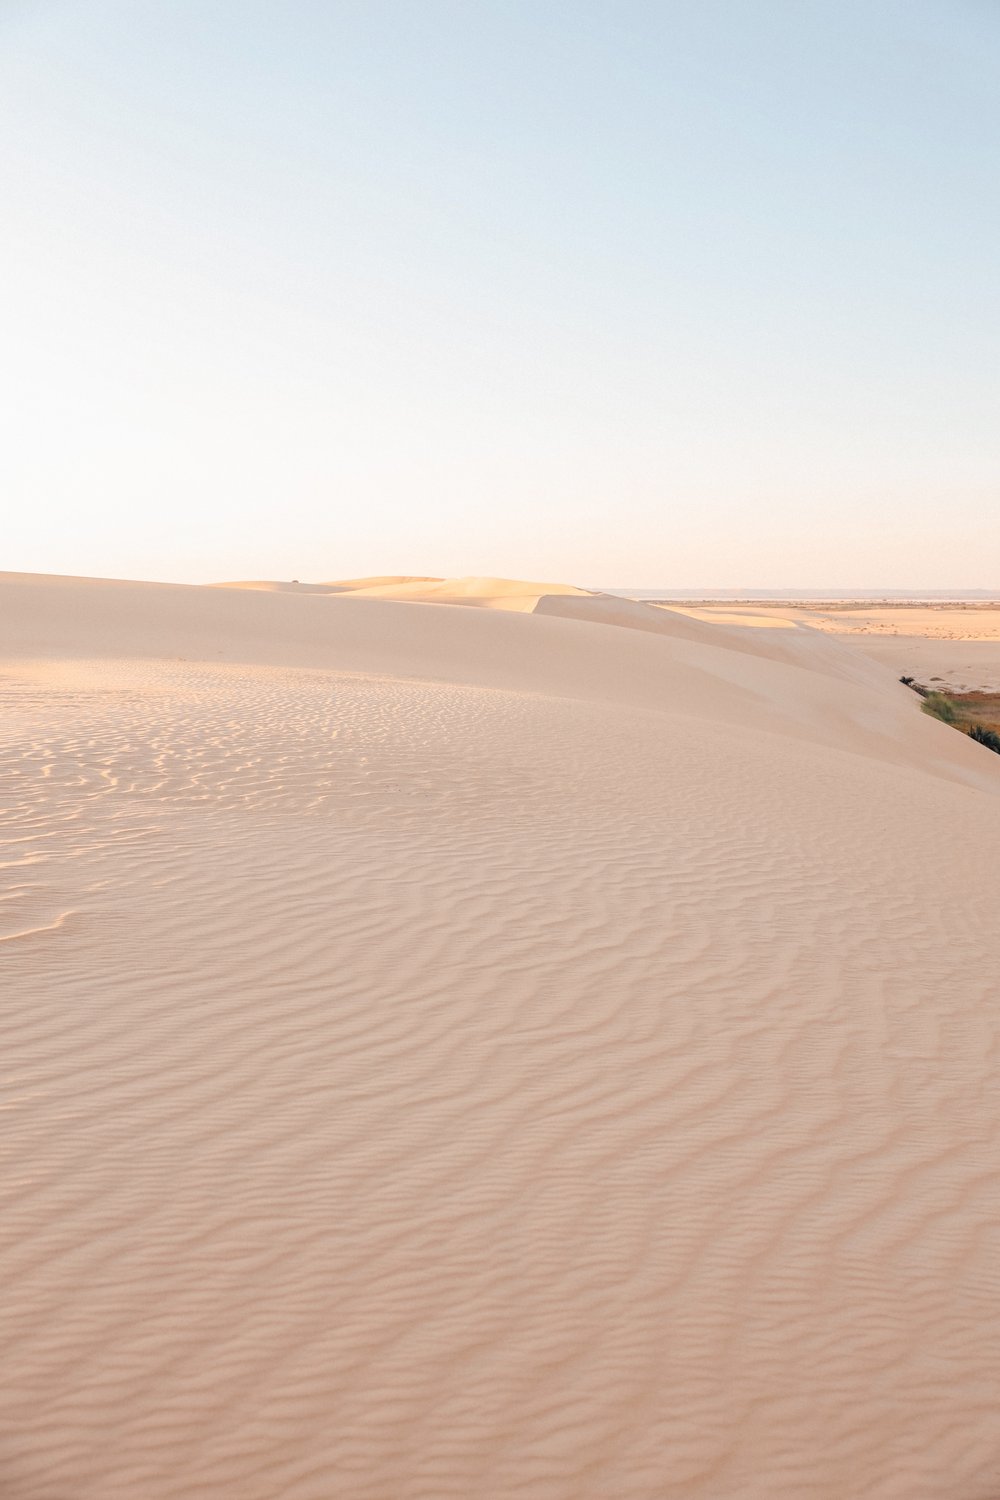 Dawn in the desert - Siwa Oasis - Egypt